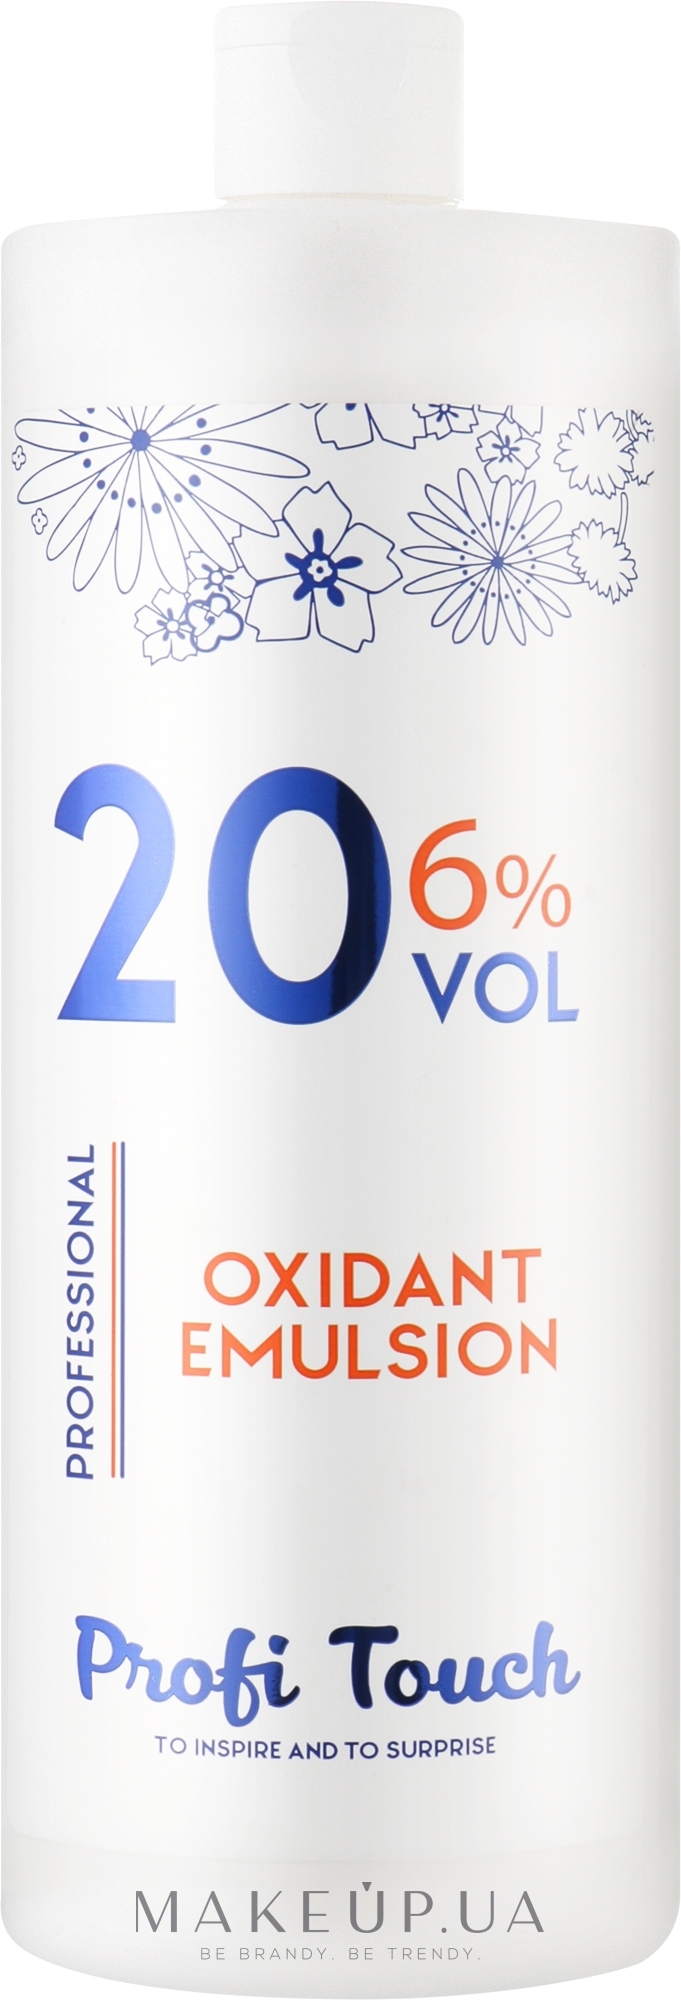 Гель-окислитель 20 vol 6% - Profi Touch Oxidant Emulsion — фото 1000g